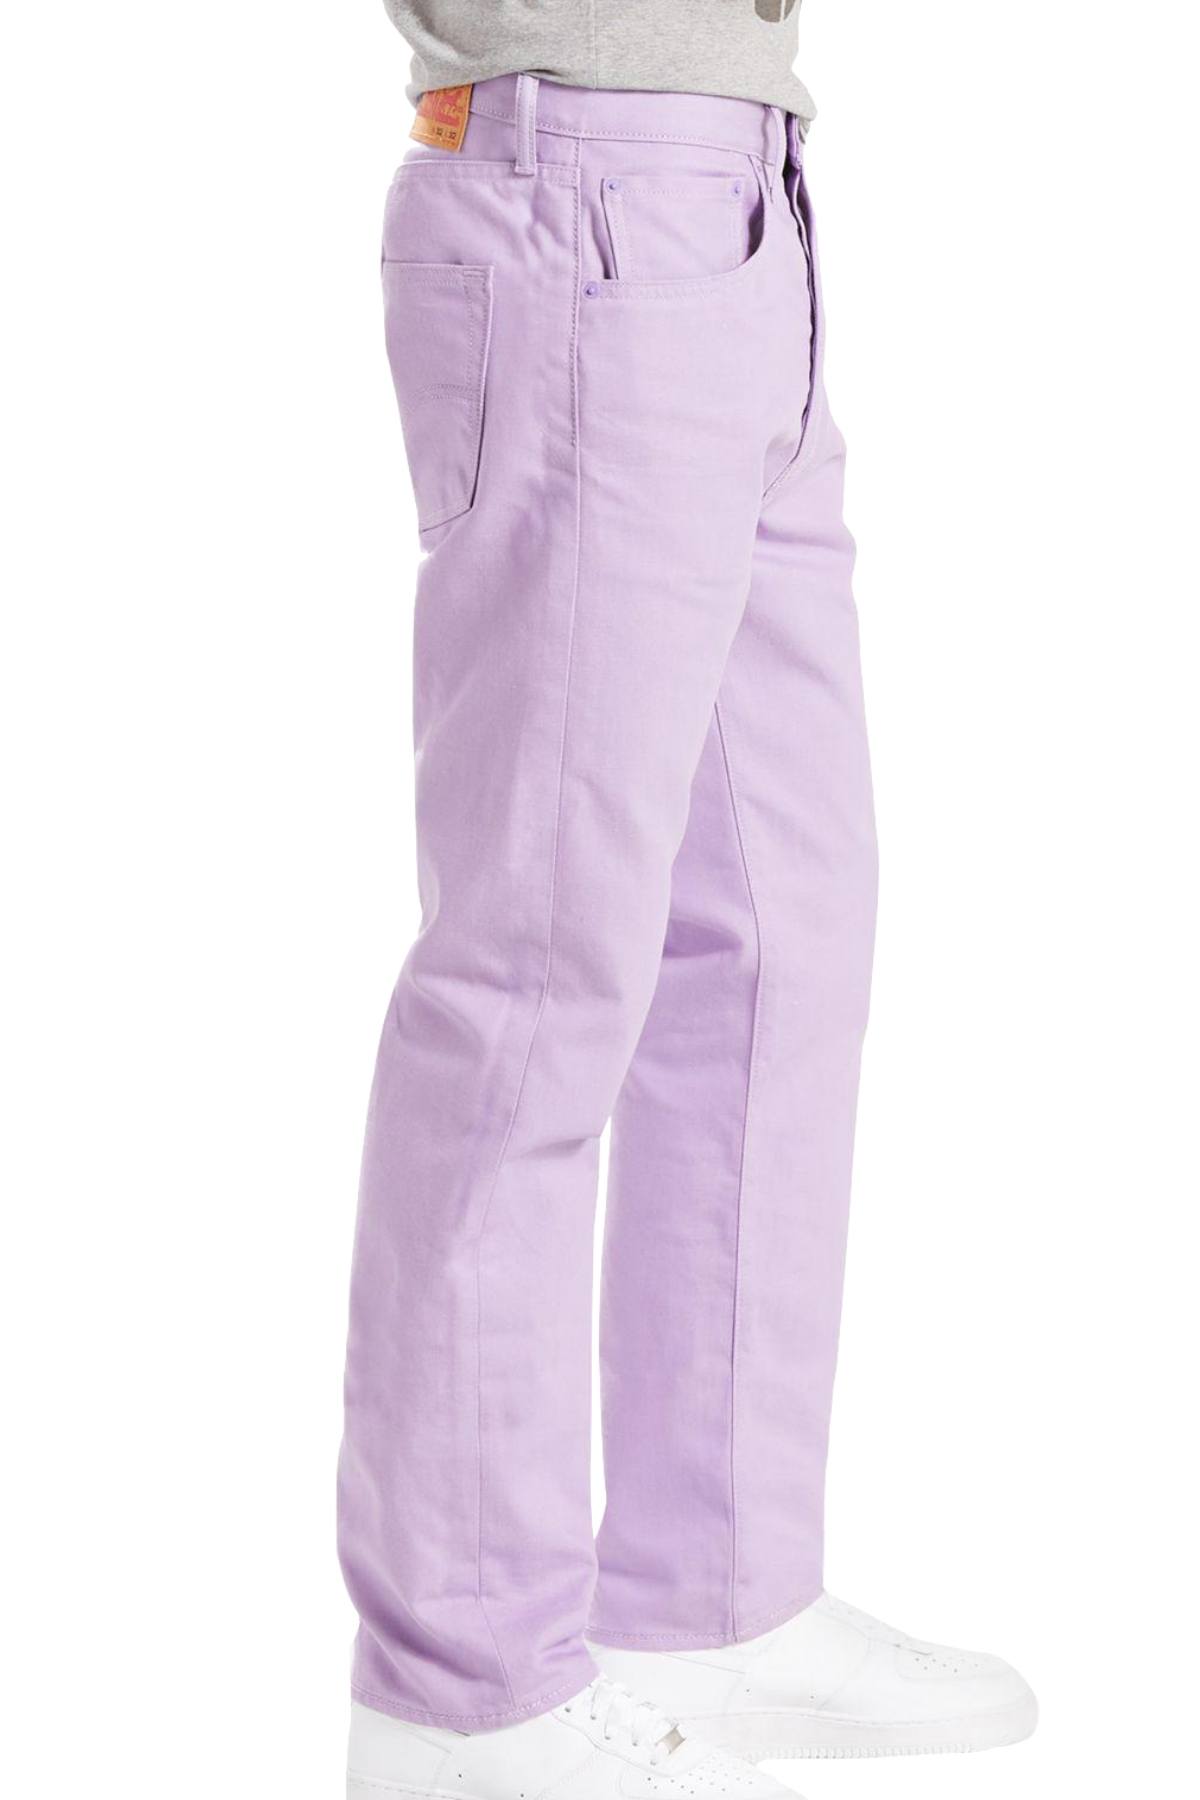 Levi's Daybreak-Lavender 501™ Original Shrink-To-Fit Jeans